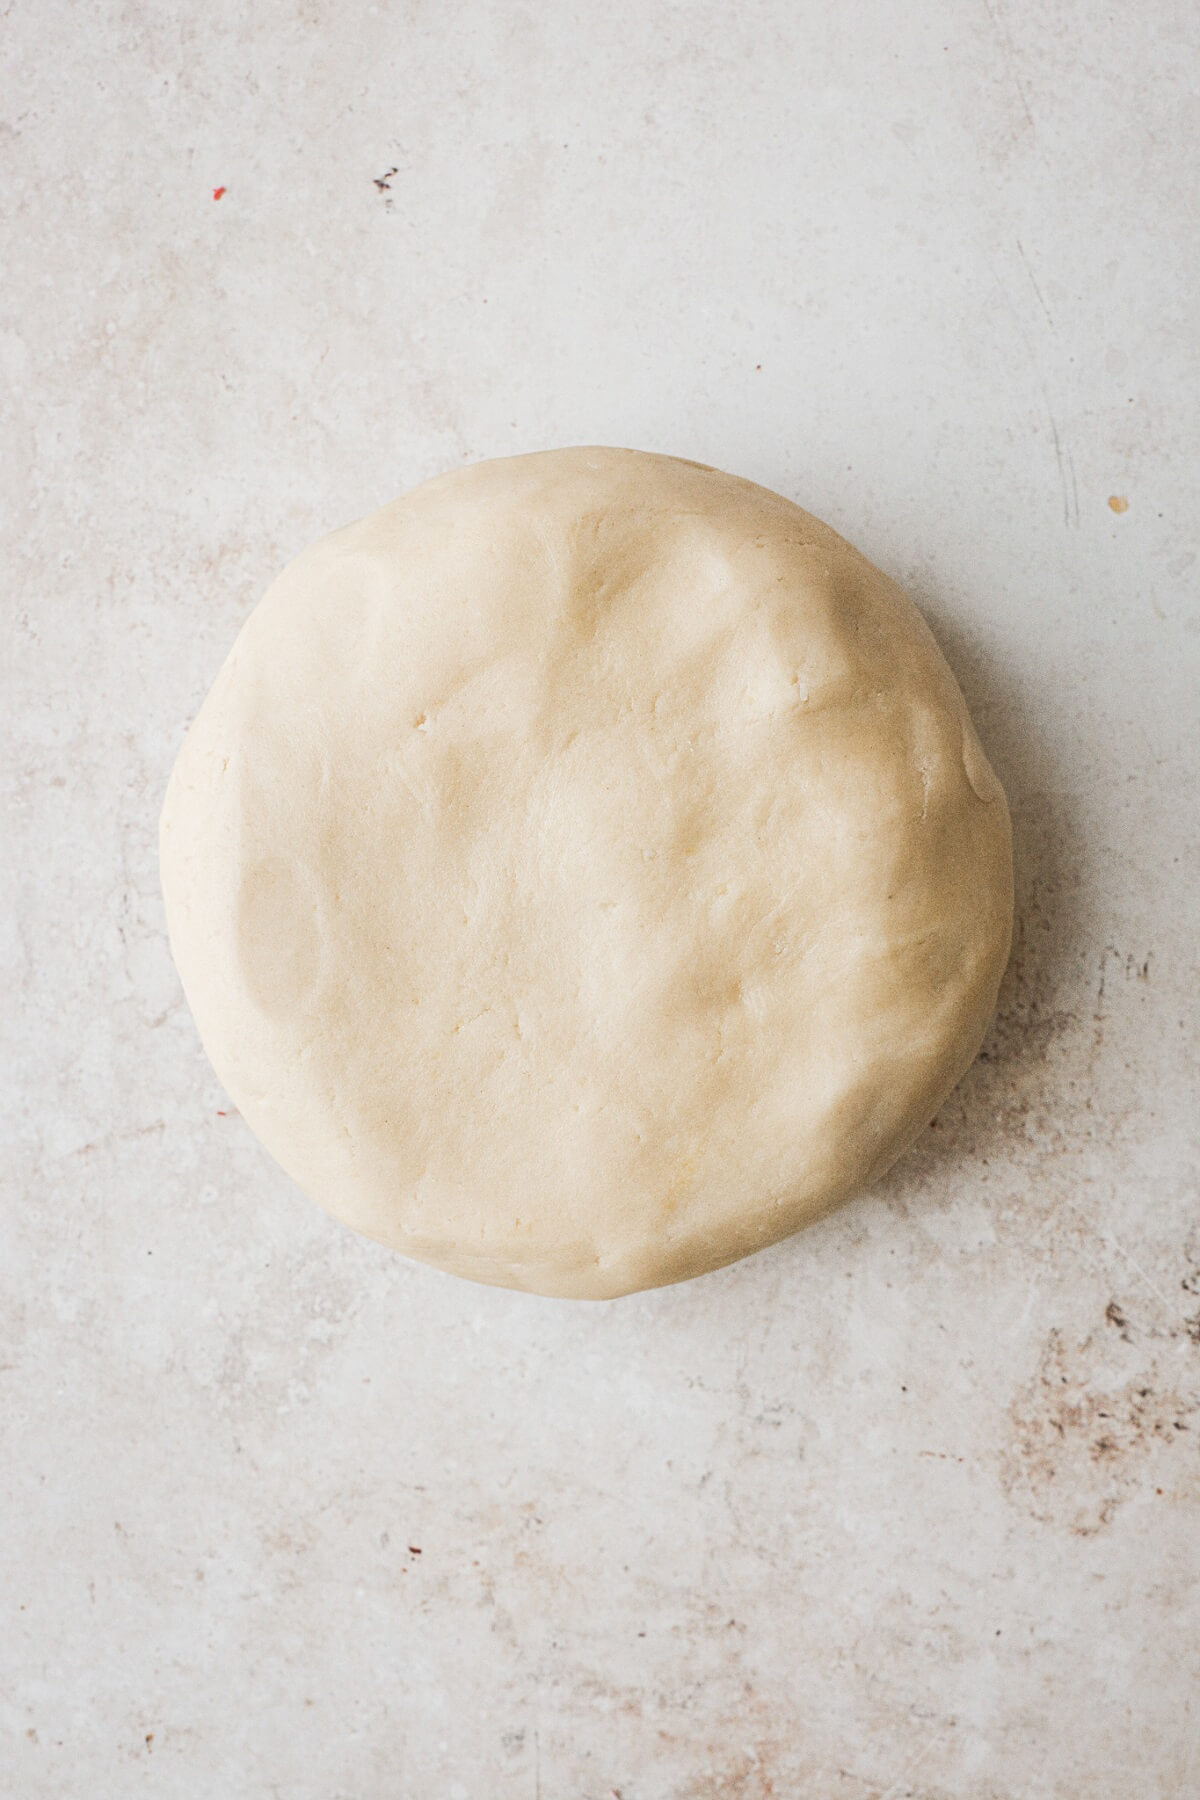 Step 6 for making pop tart dough.